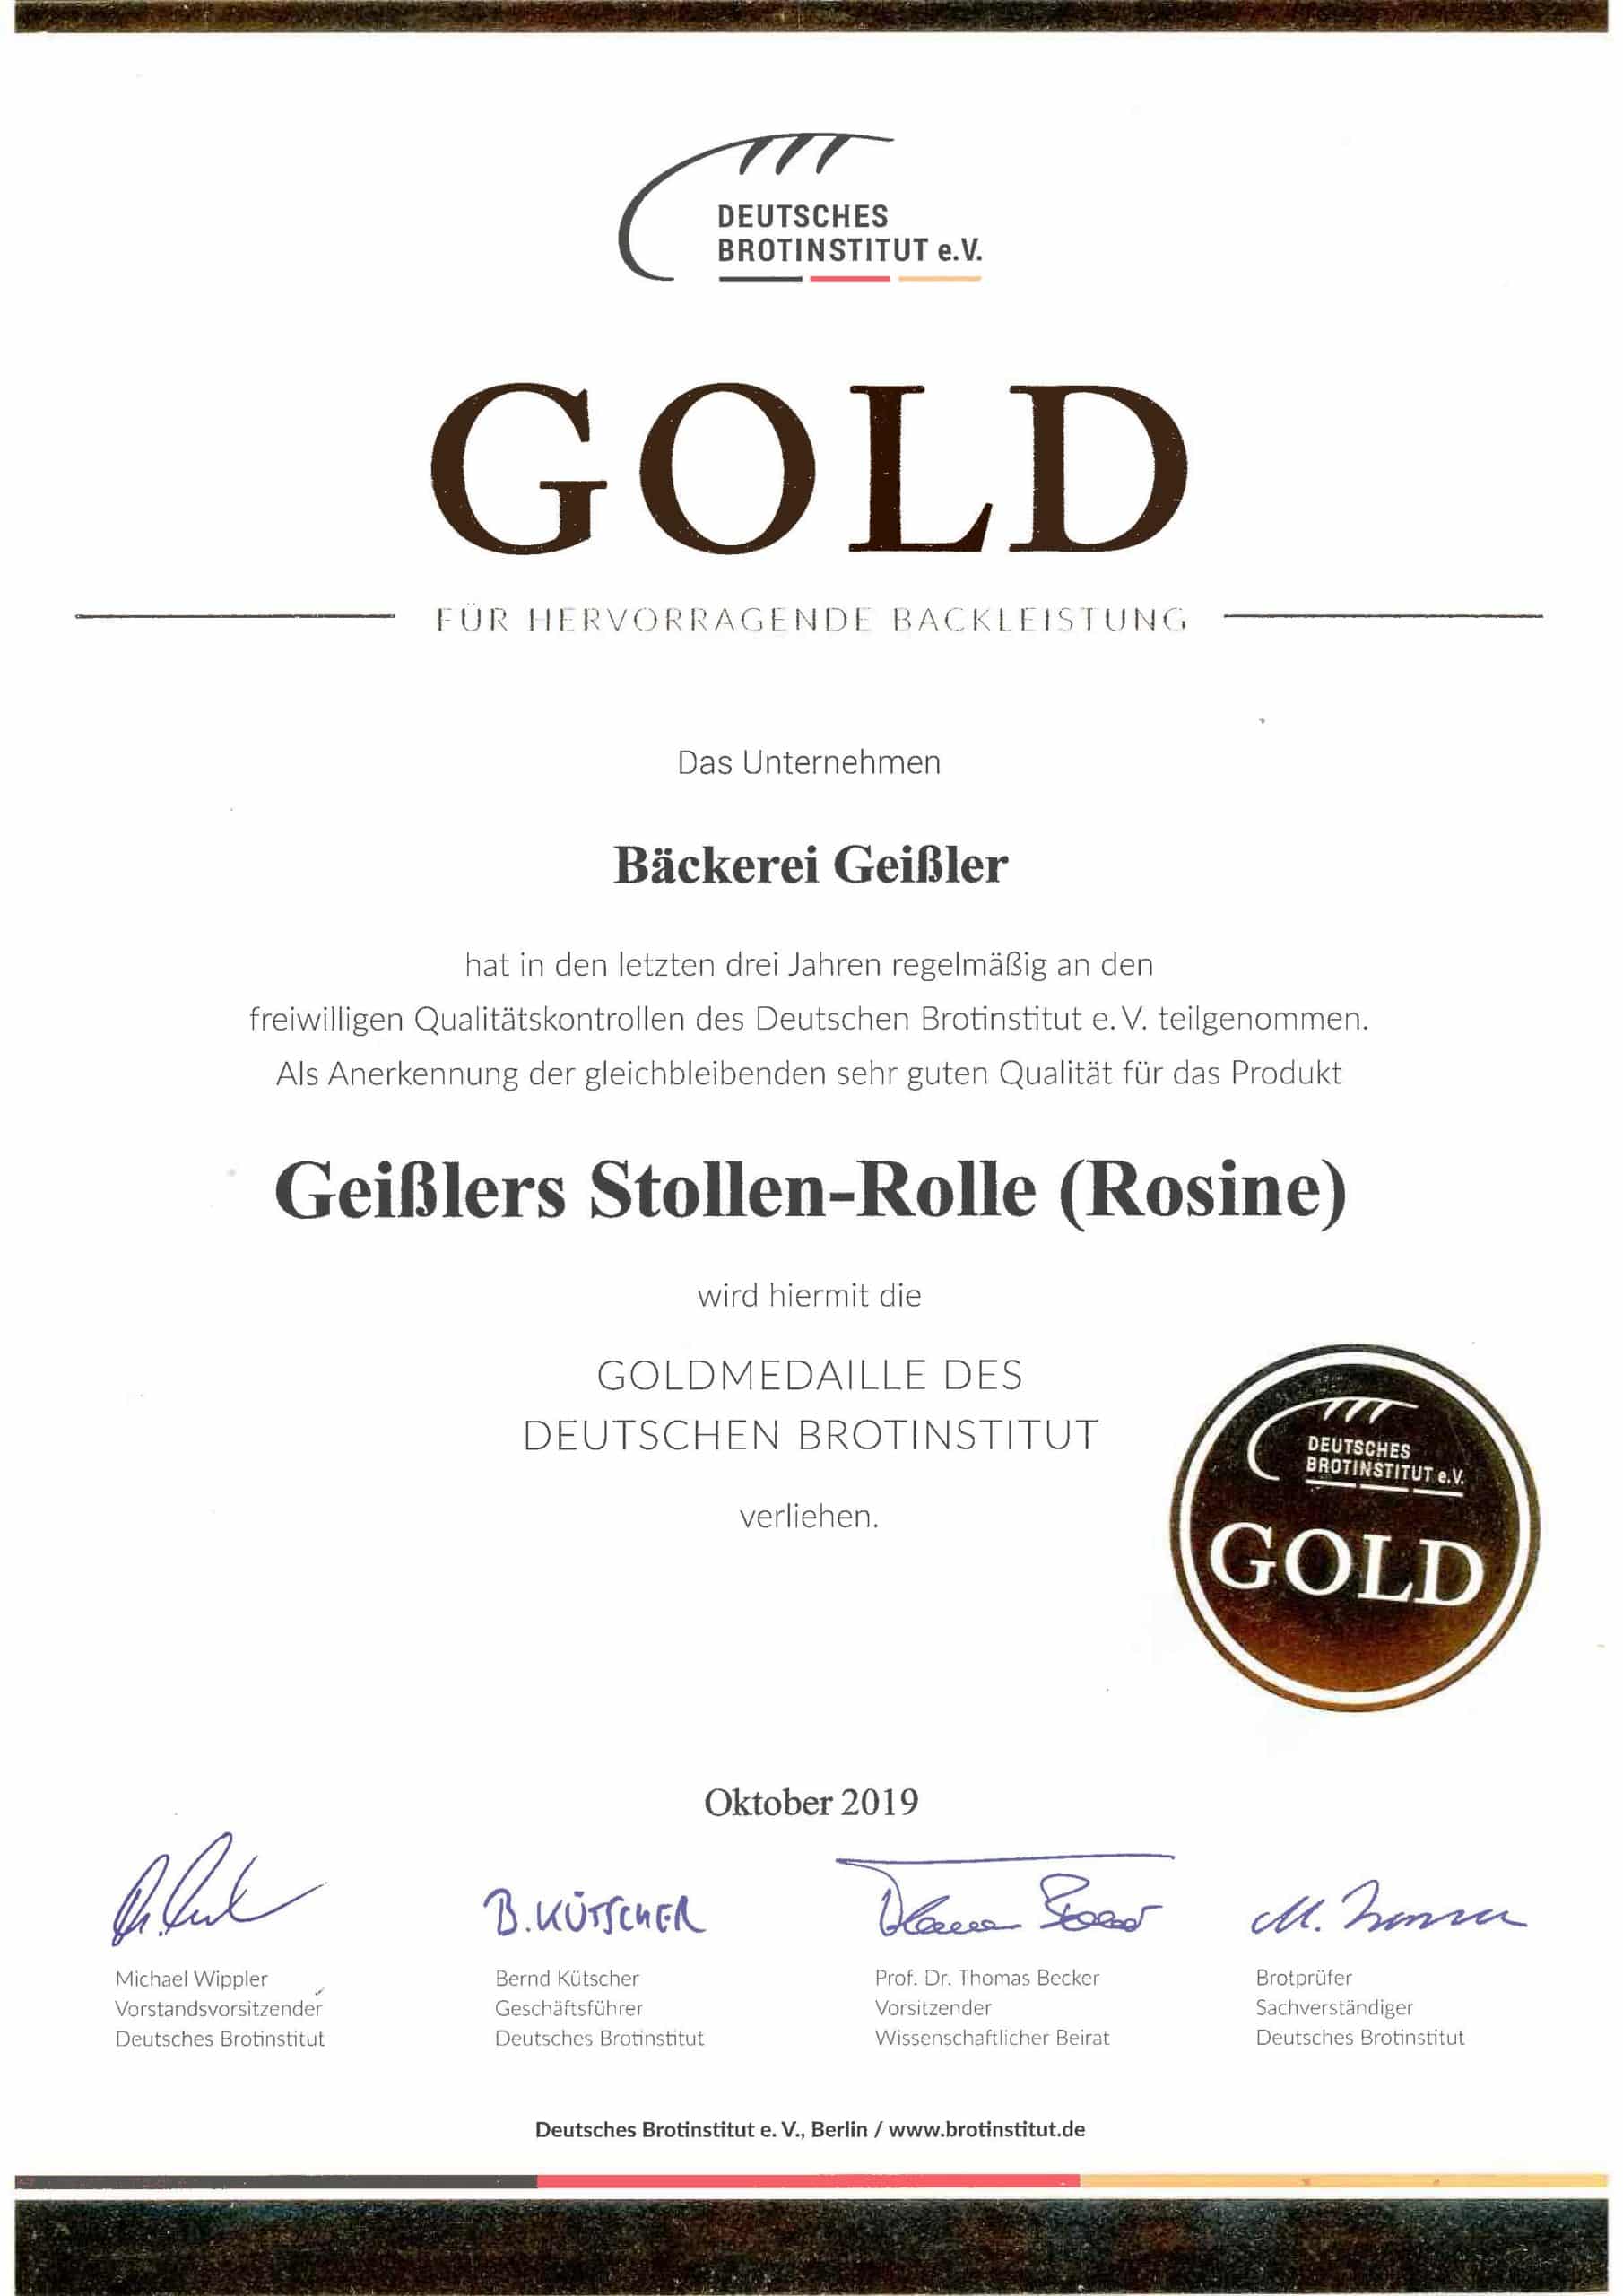 20200617_Geißler-Stollen-Rollen_Goldmedaille_Bortinstitut-scaled.jpg